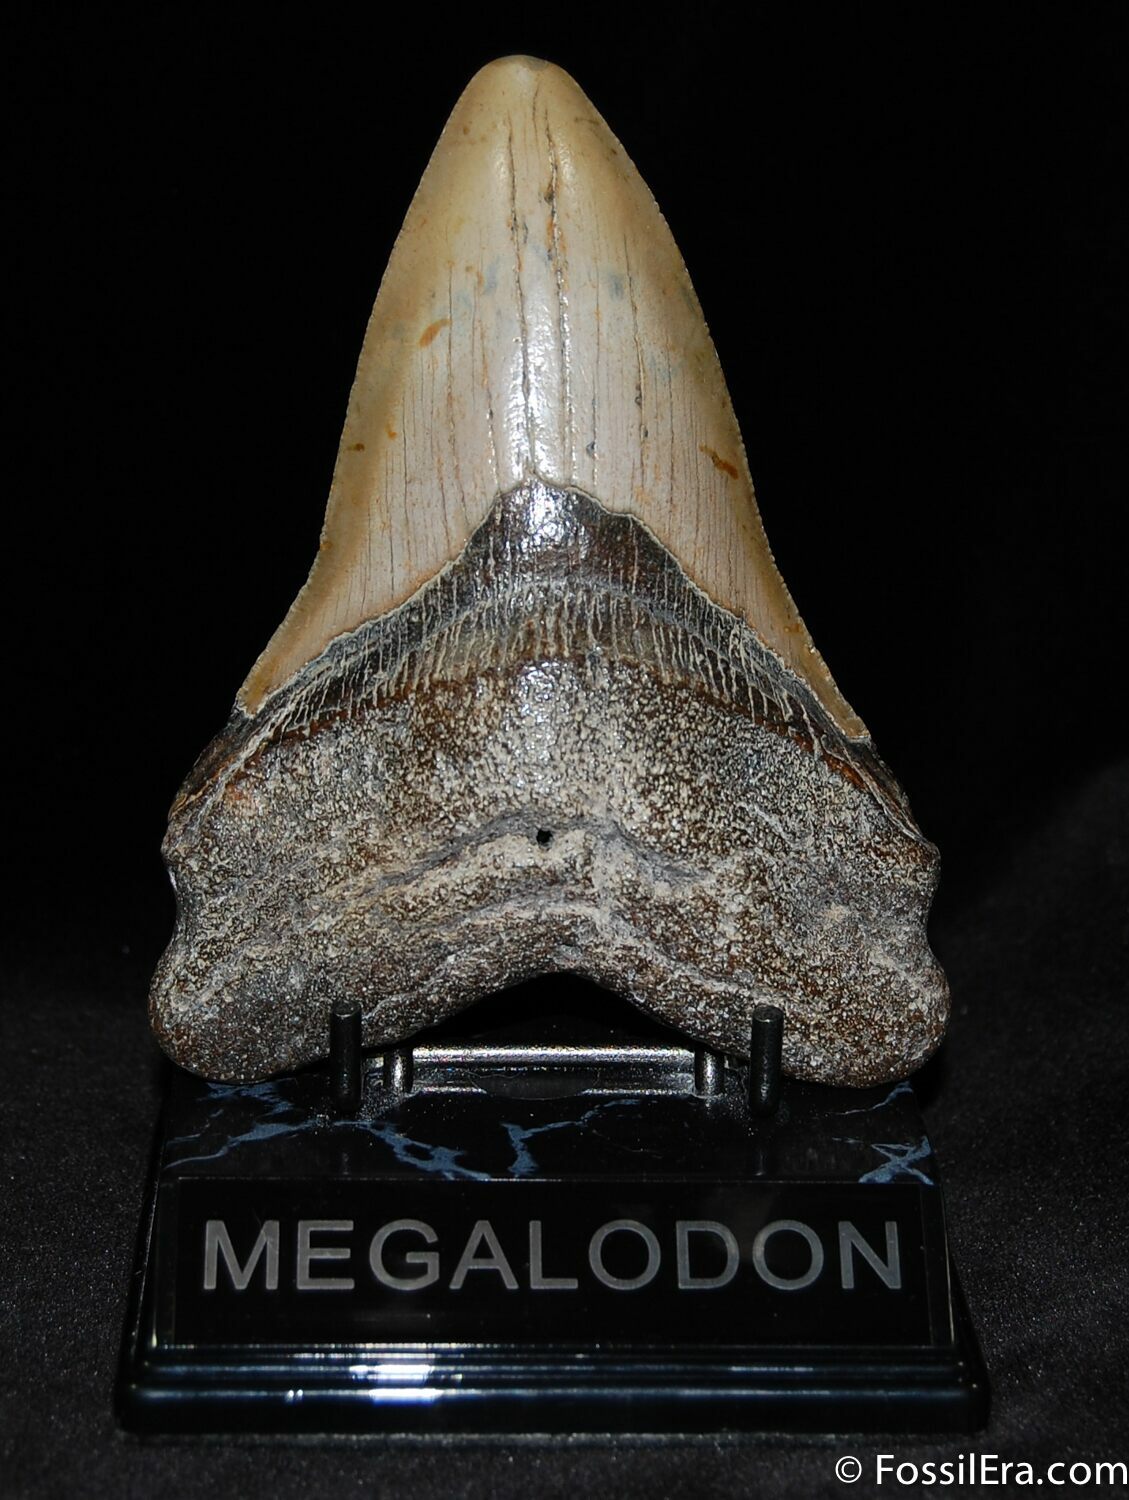 carcharodon megalodon teeth